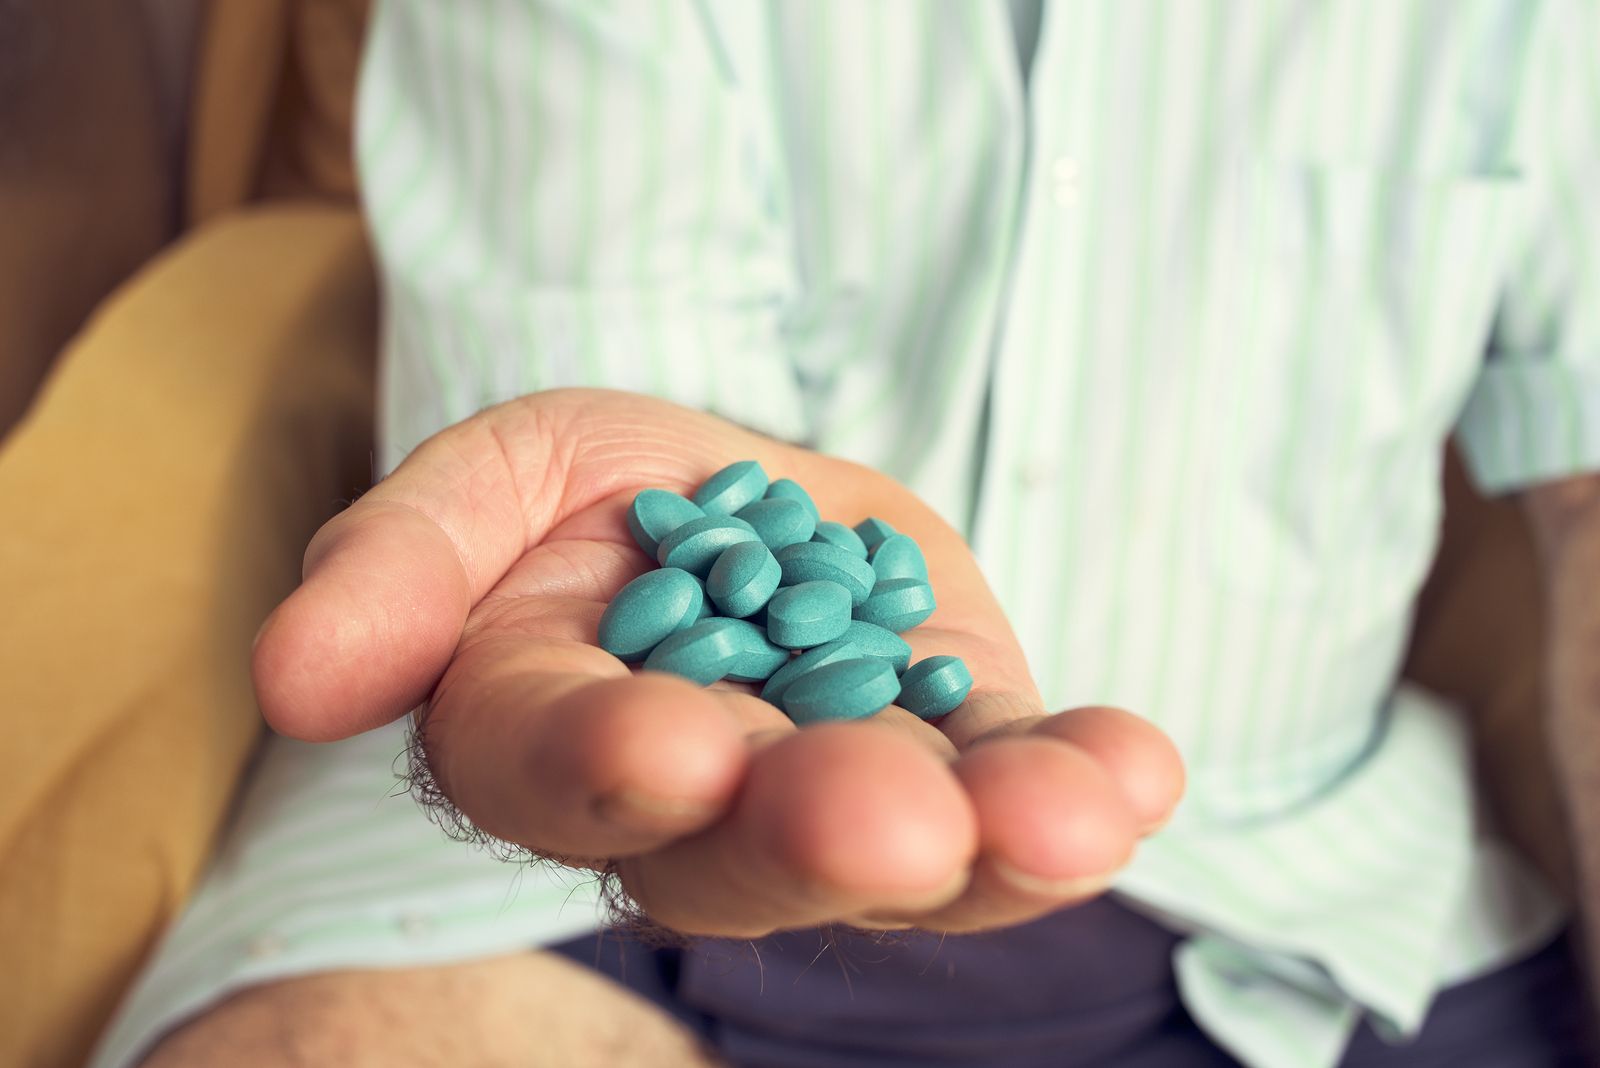 Tomar Viagra reduce el riesgo de Alzheimer un 69 por ciento, según un estudio